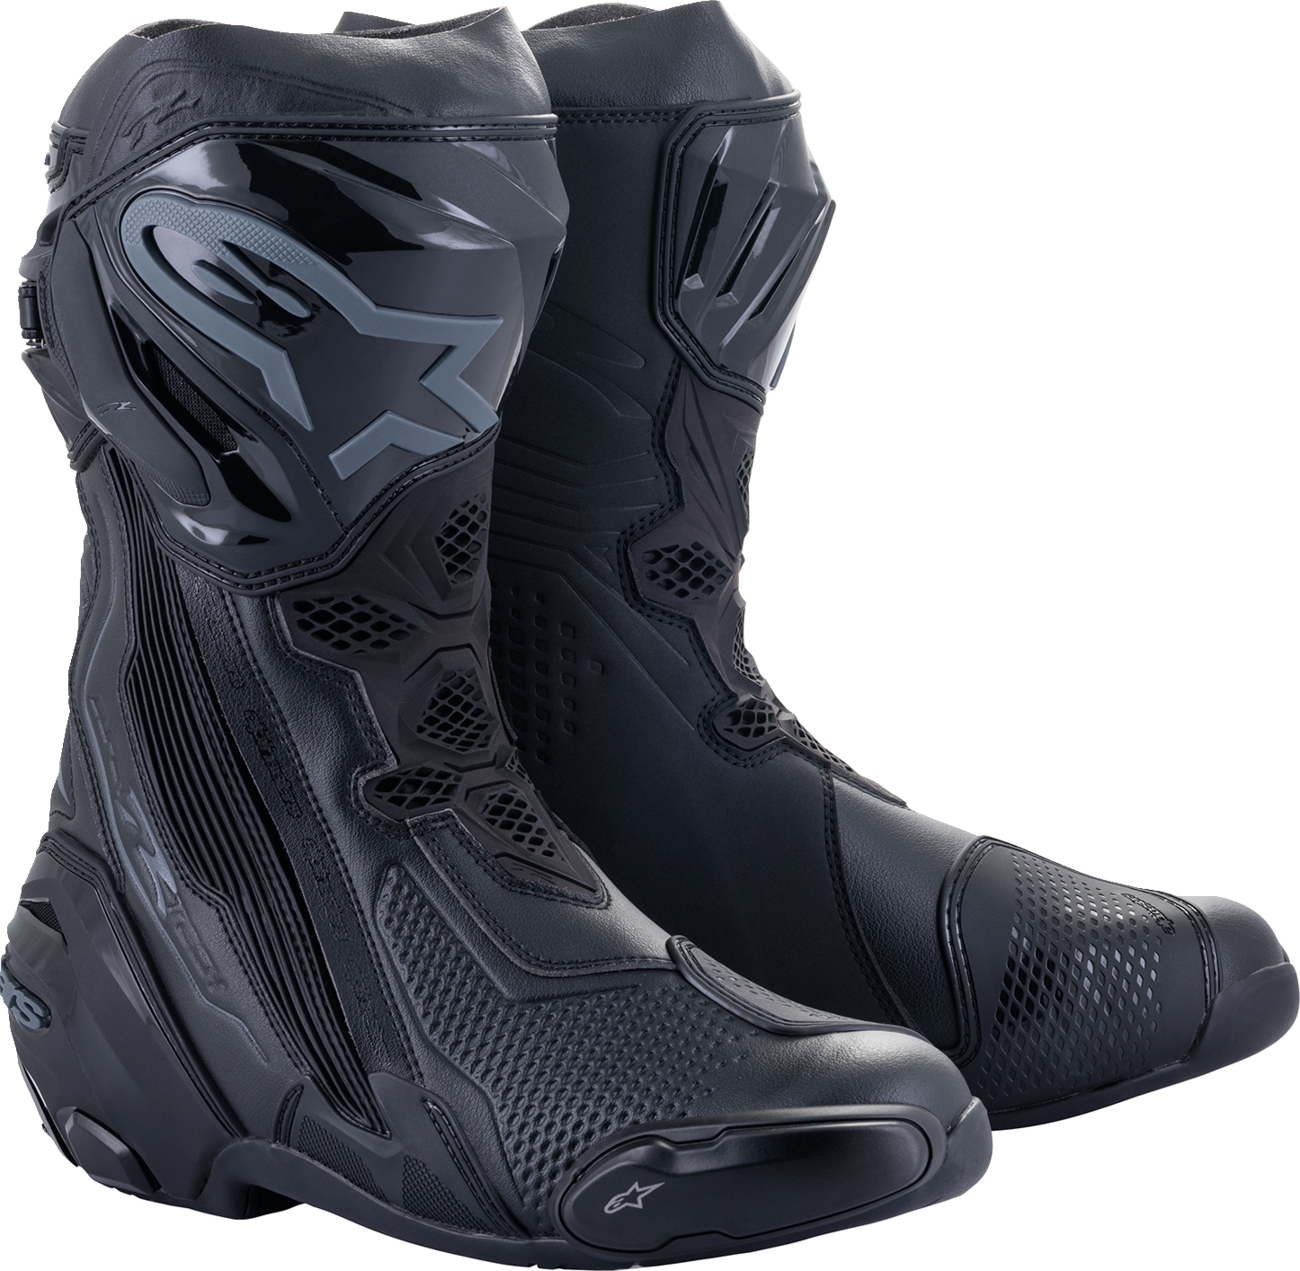 ALPINESTARS Supertech R Boots - Black - US 8 / EU 42 2220021-1100-42